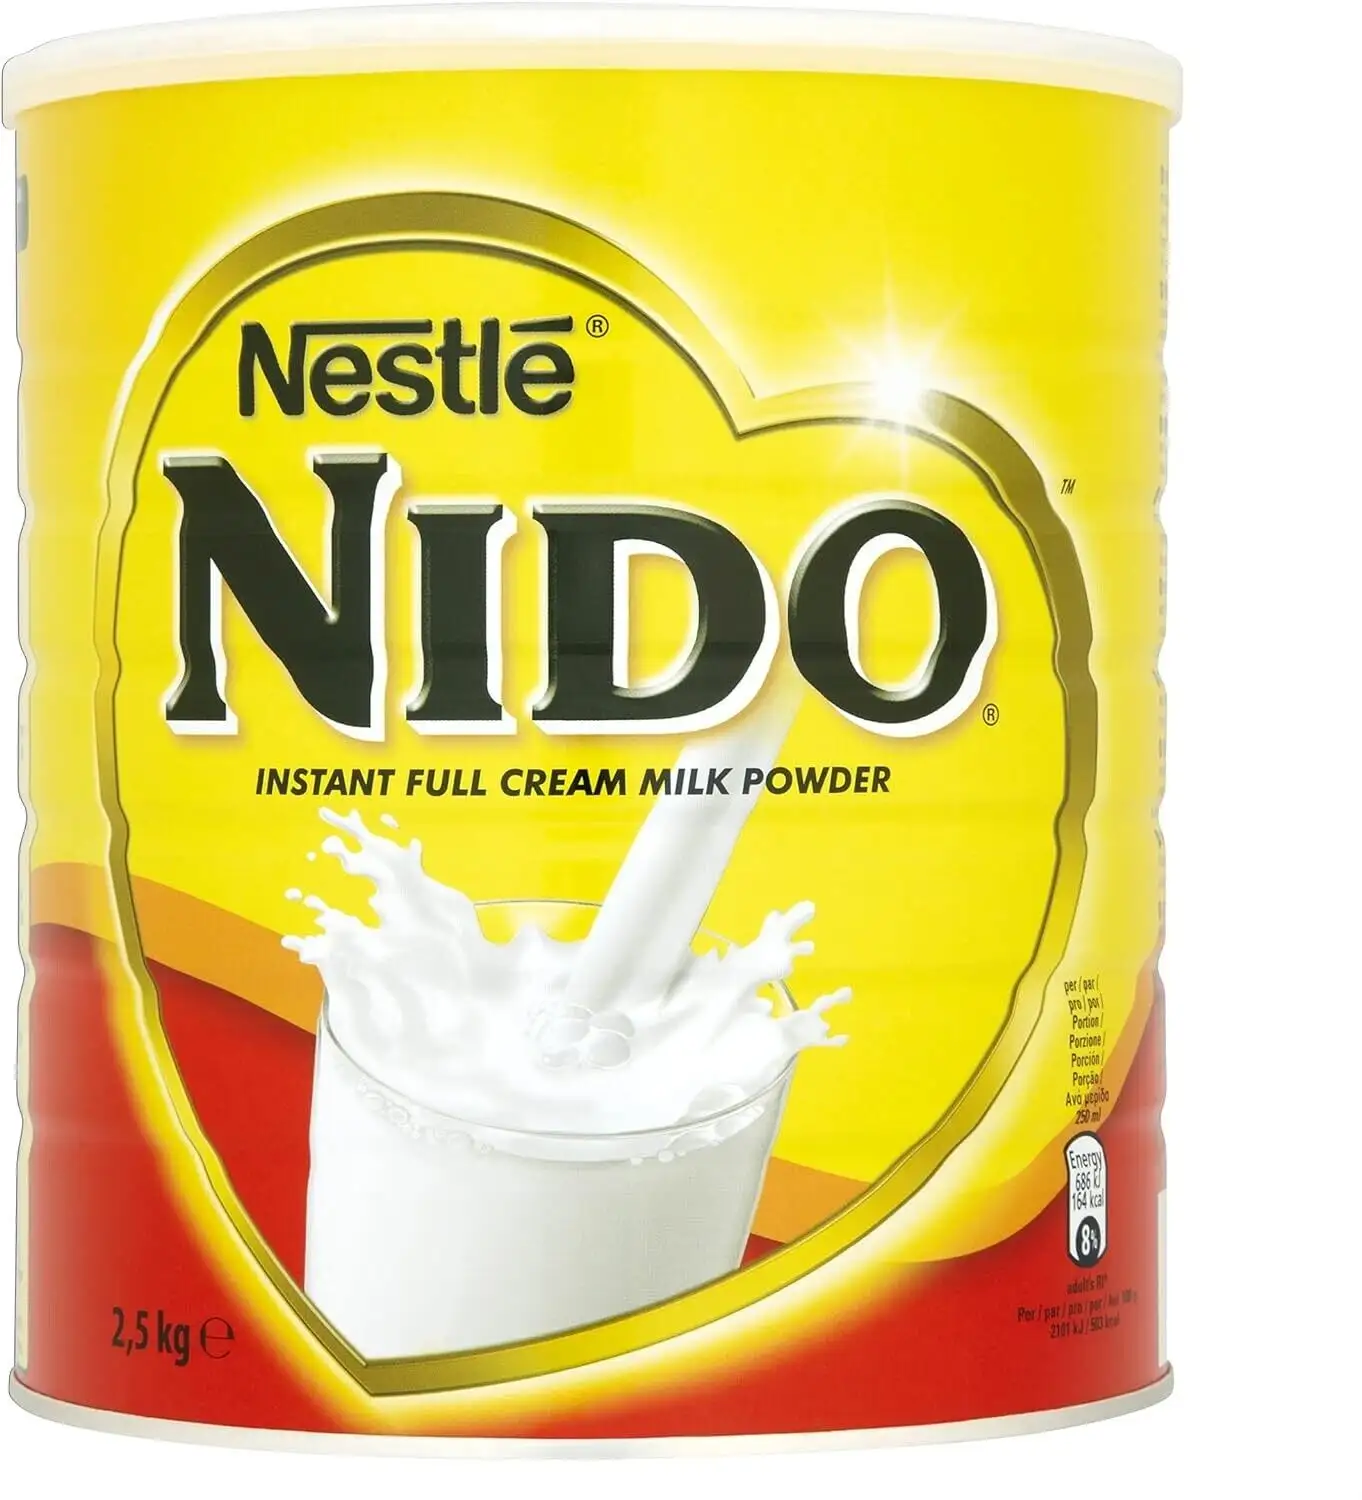 Leche en polvo fortificada Nestlé Nido 900g, caja de 12/Leche en polvo Nestlé Nido importada de Holanda especialmente formulada fortificada